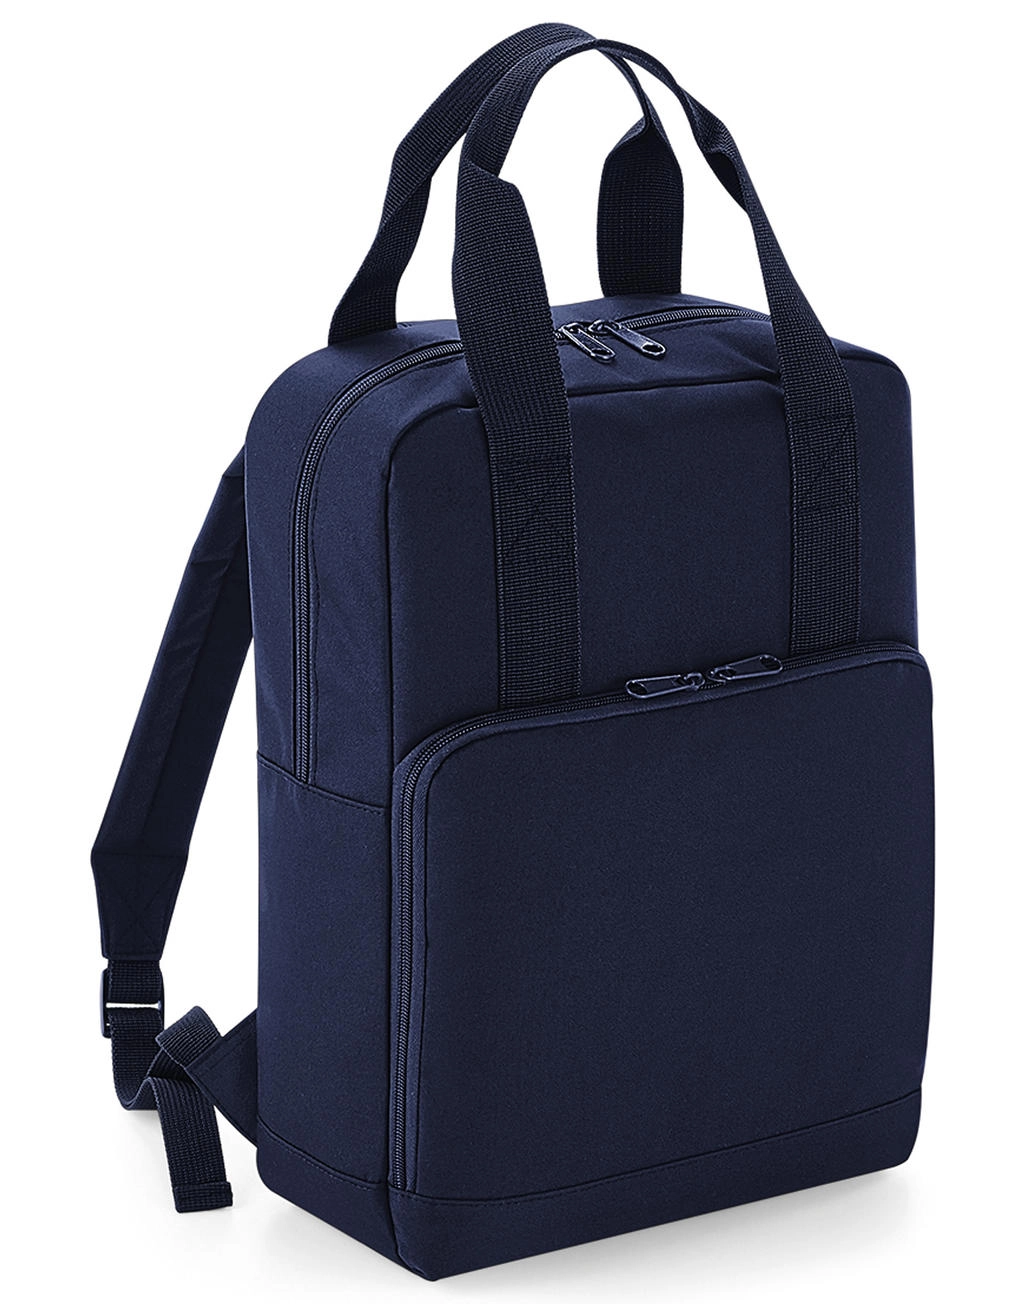 Twin Handle Backpack zum Besticken und Bedrucken mit Ihren Logo, Schriftzug oder Motiv.